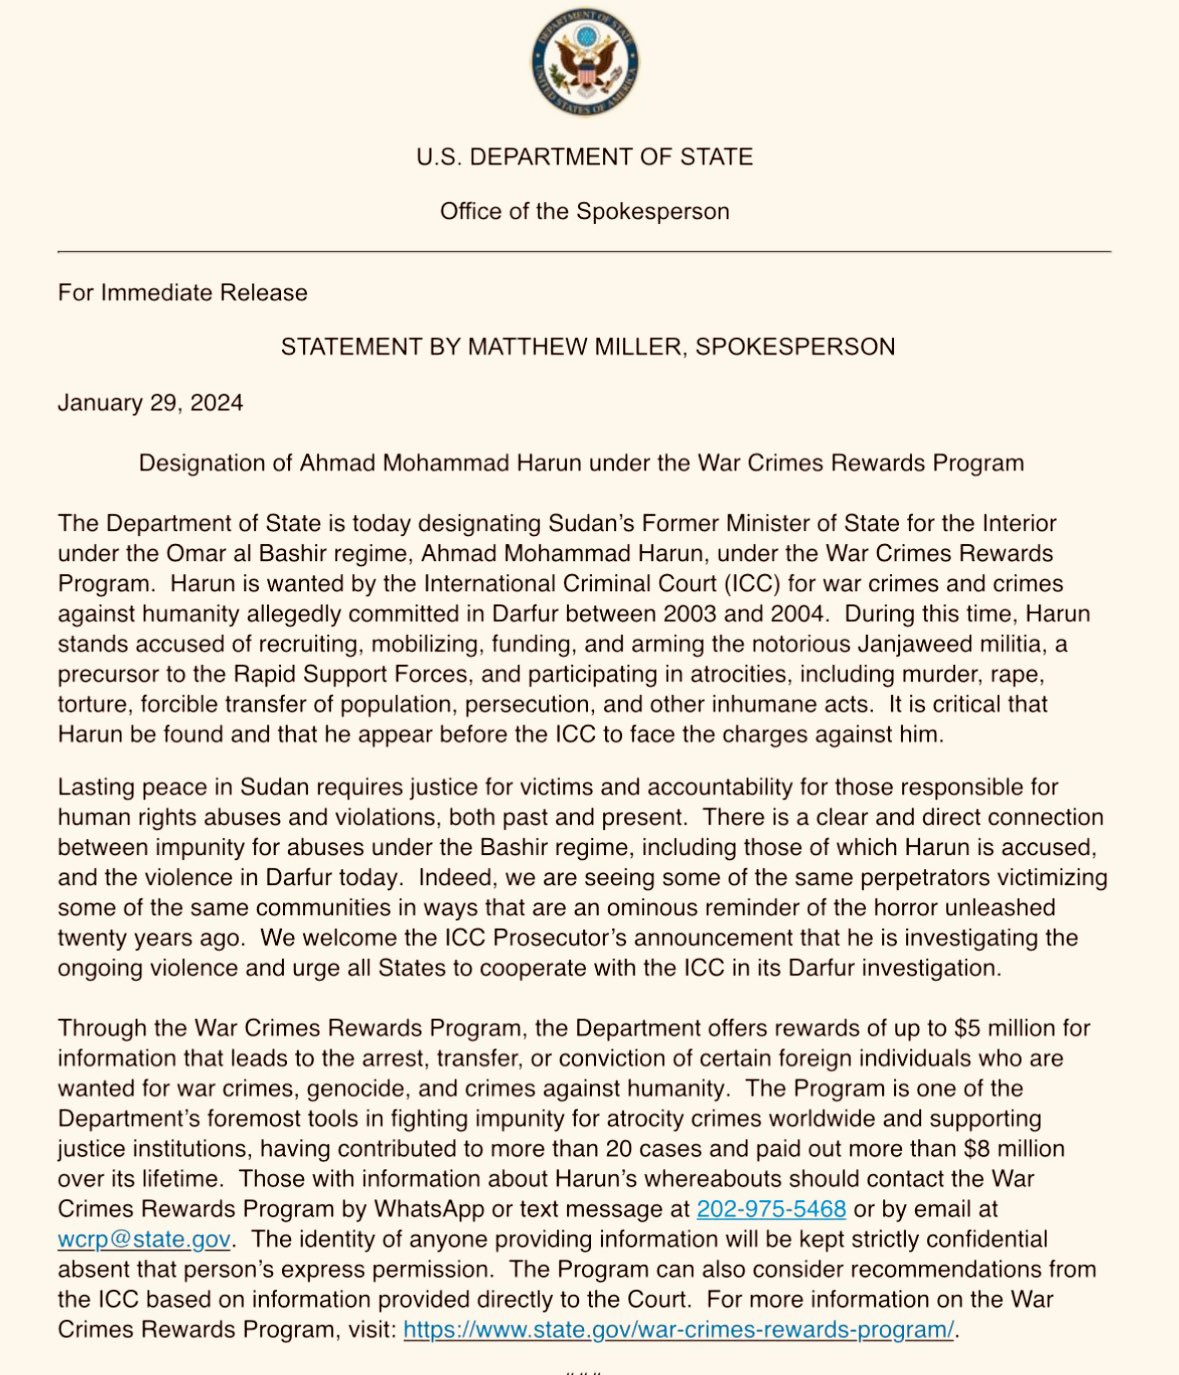 بيان الخارجية الأمريكية بإعلان مكافأة للإرشاد بمكان أحمد هارون